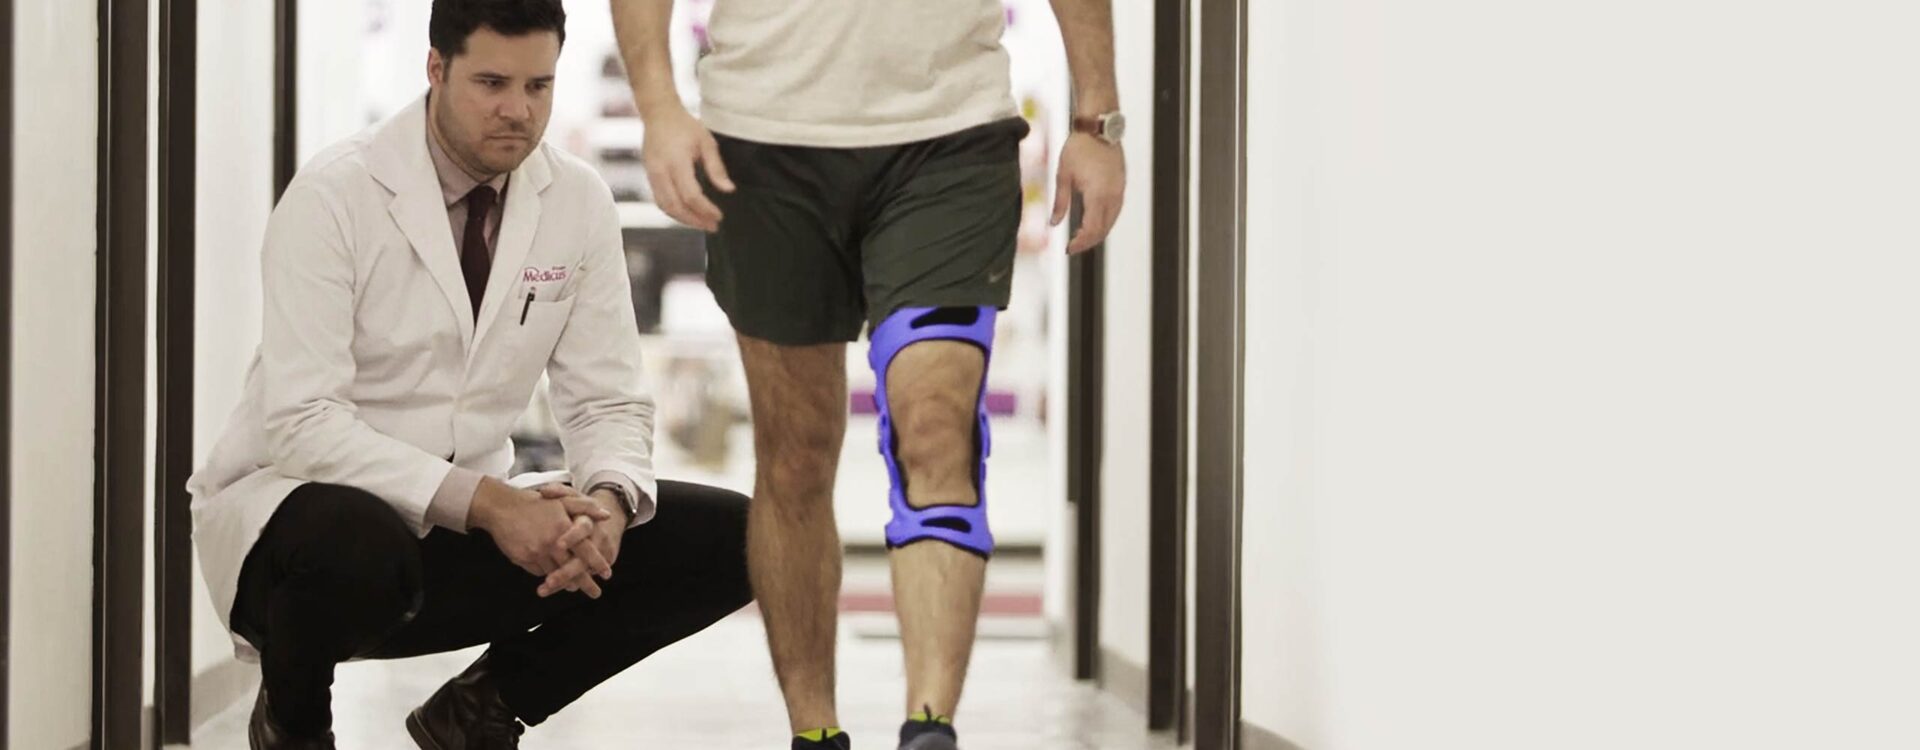 Man wearing an unloader knee brace